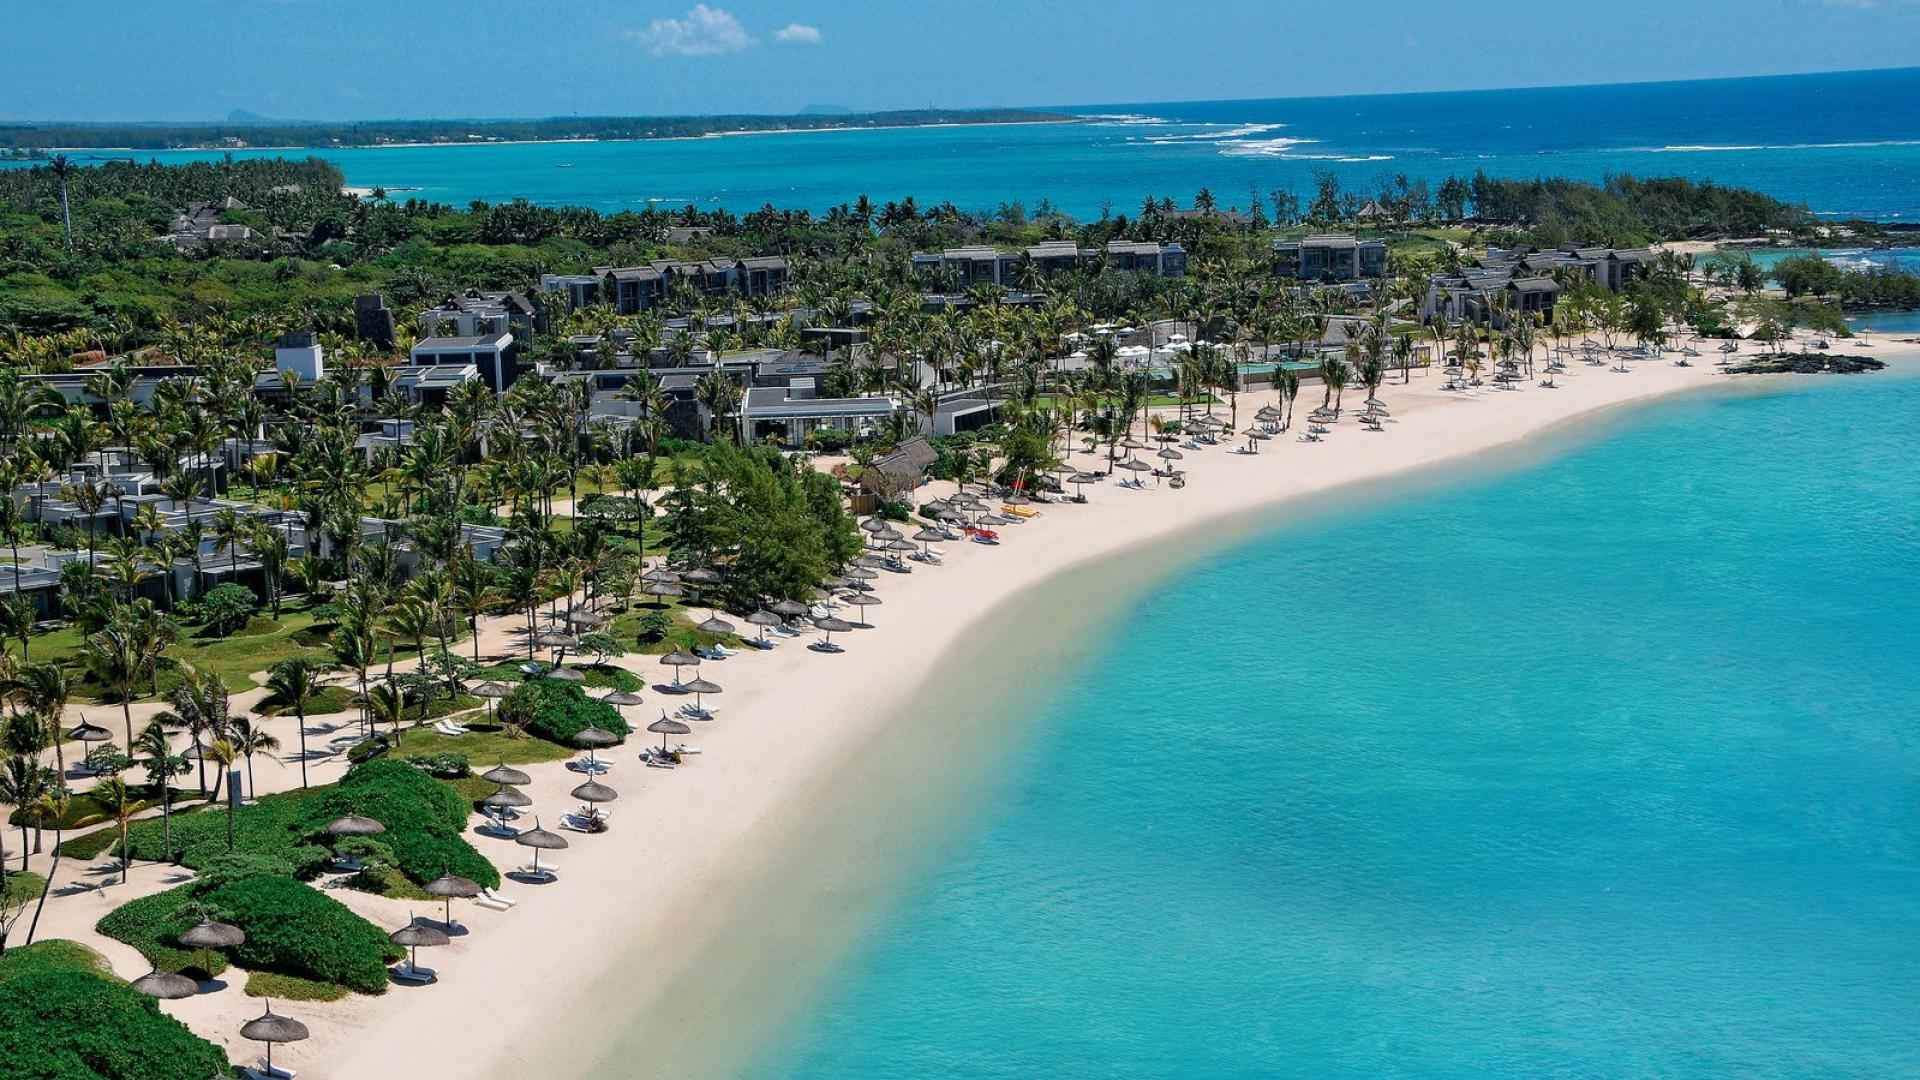 Bord de mer de l'hôtel Long beach Luxury resort situé à l'île Maurice